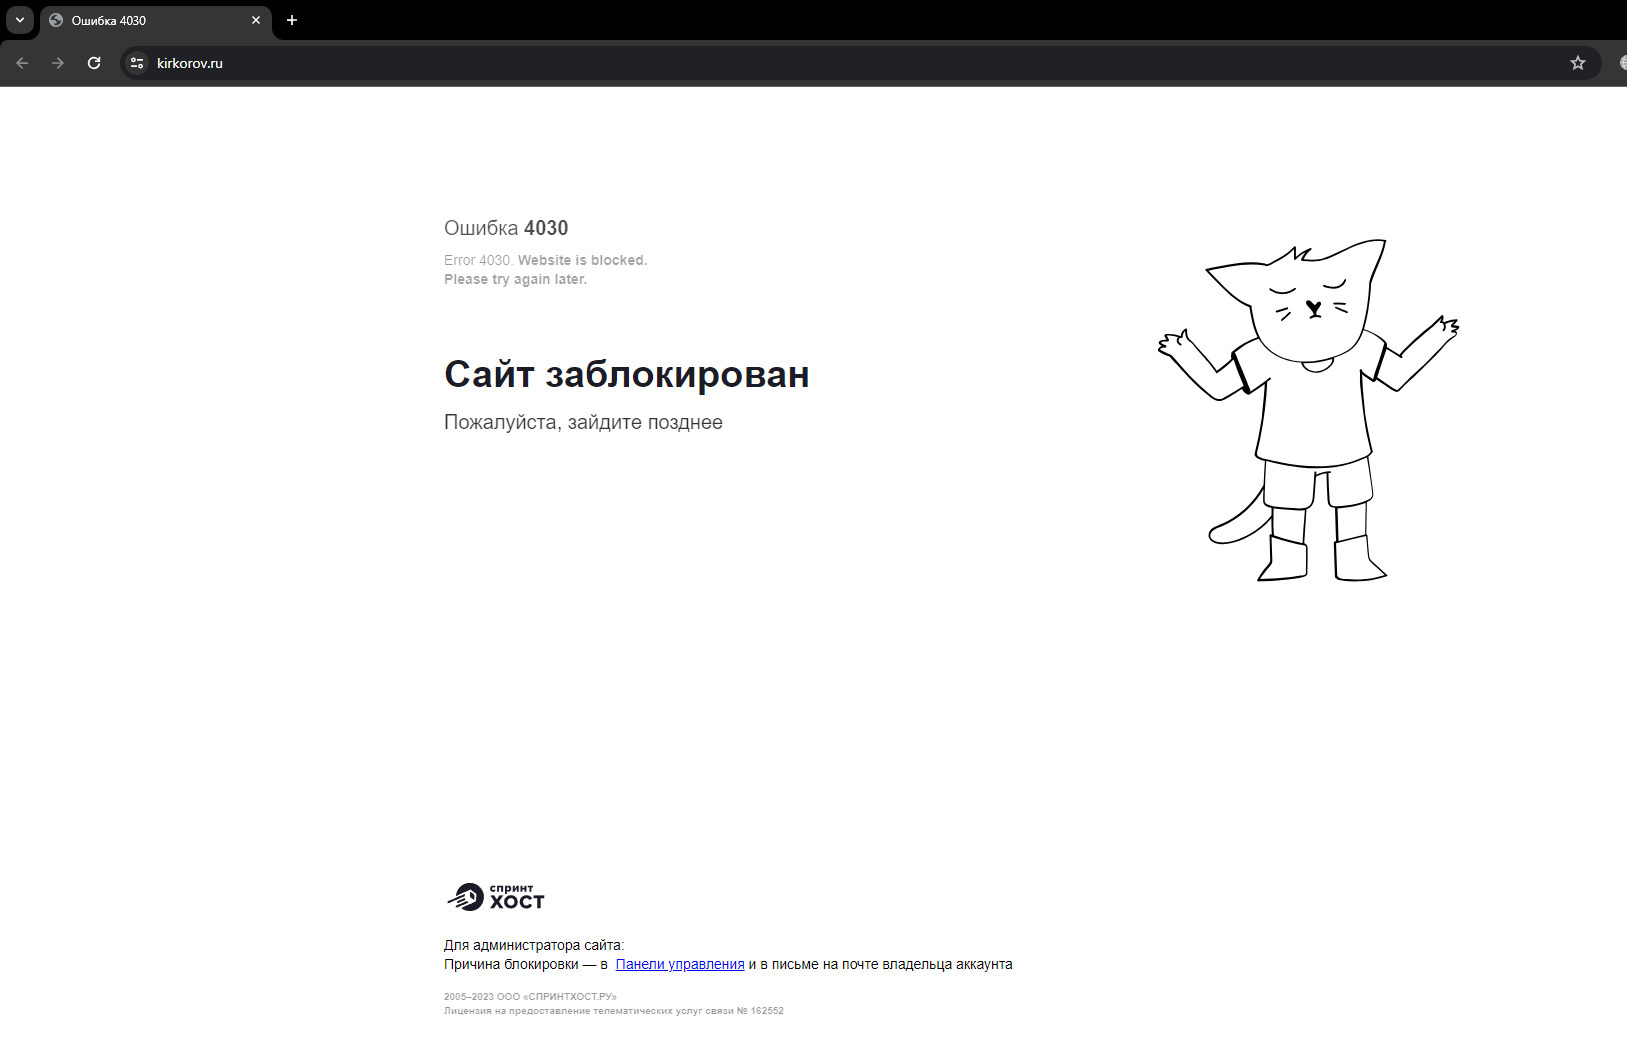 Официальный сайт Филиппа Киркорова недоступен